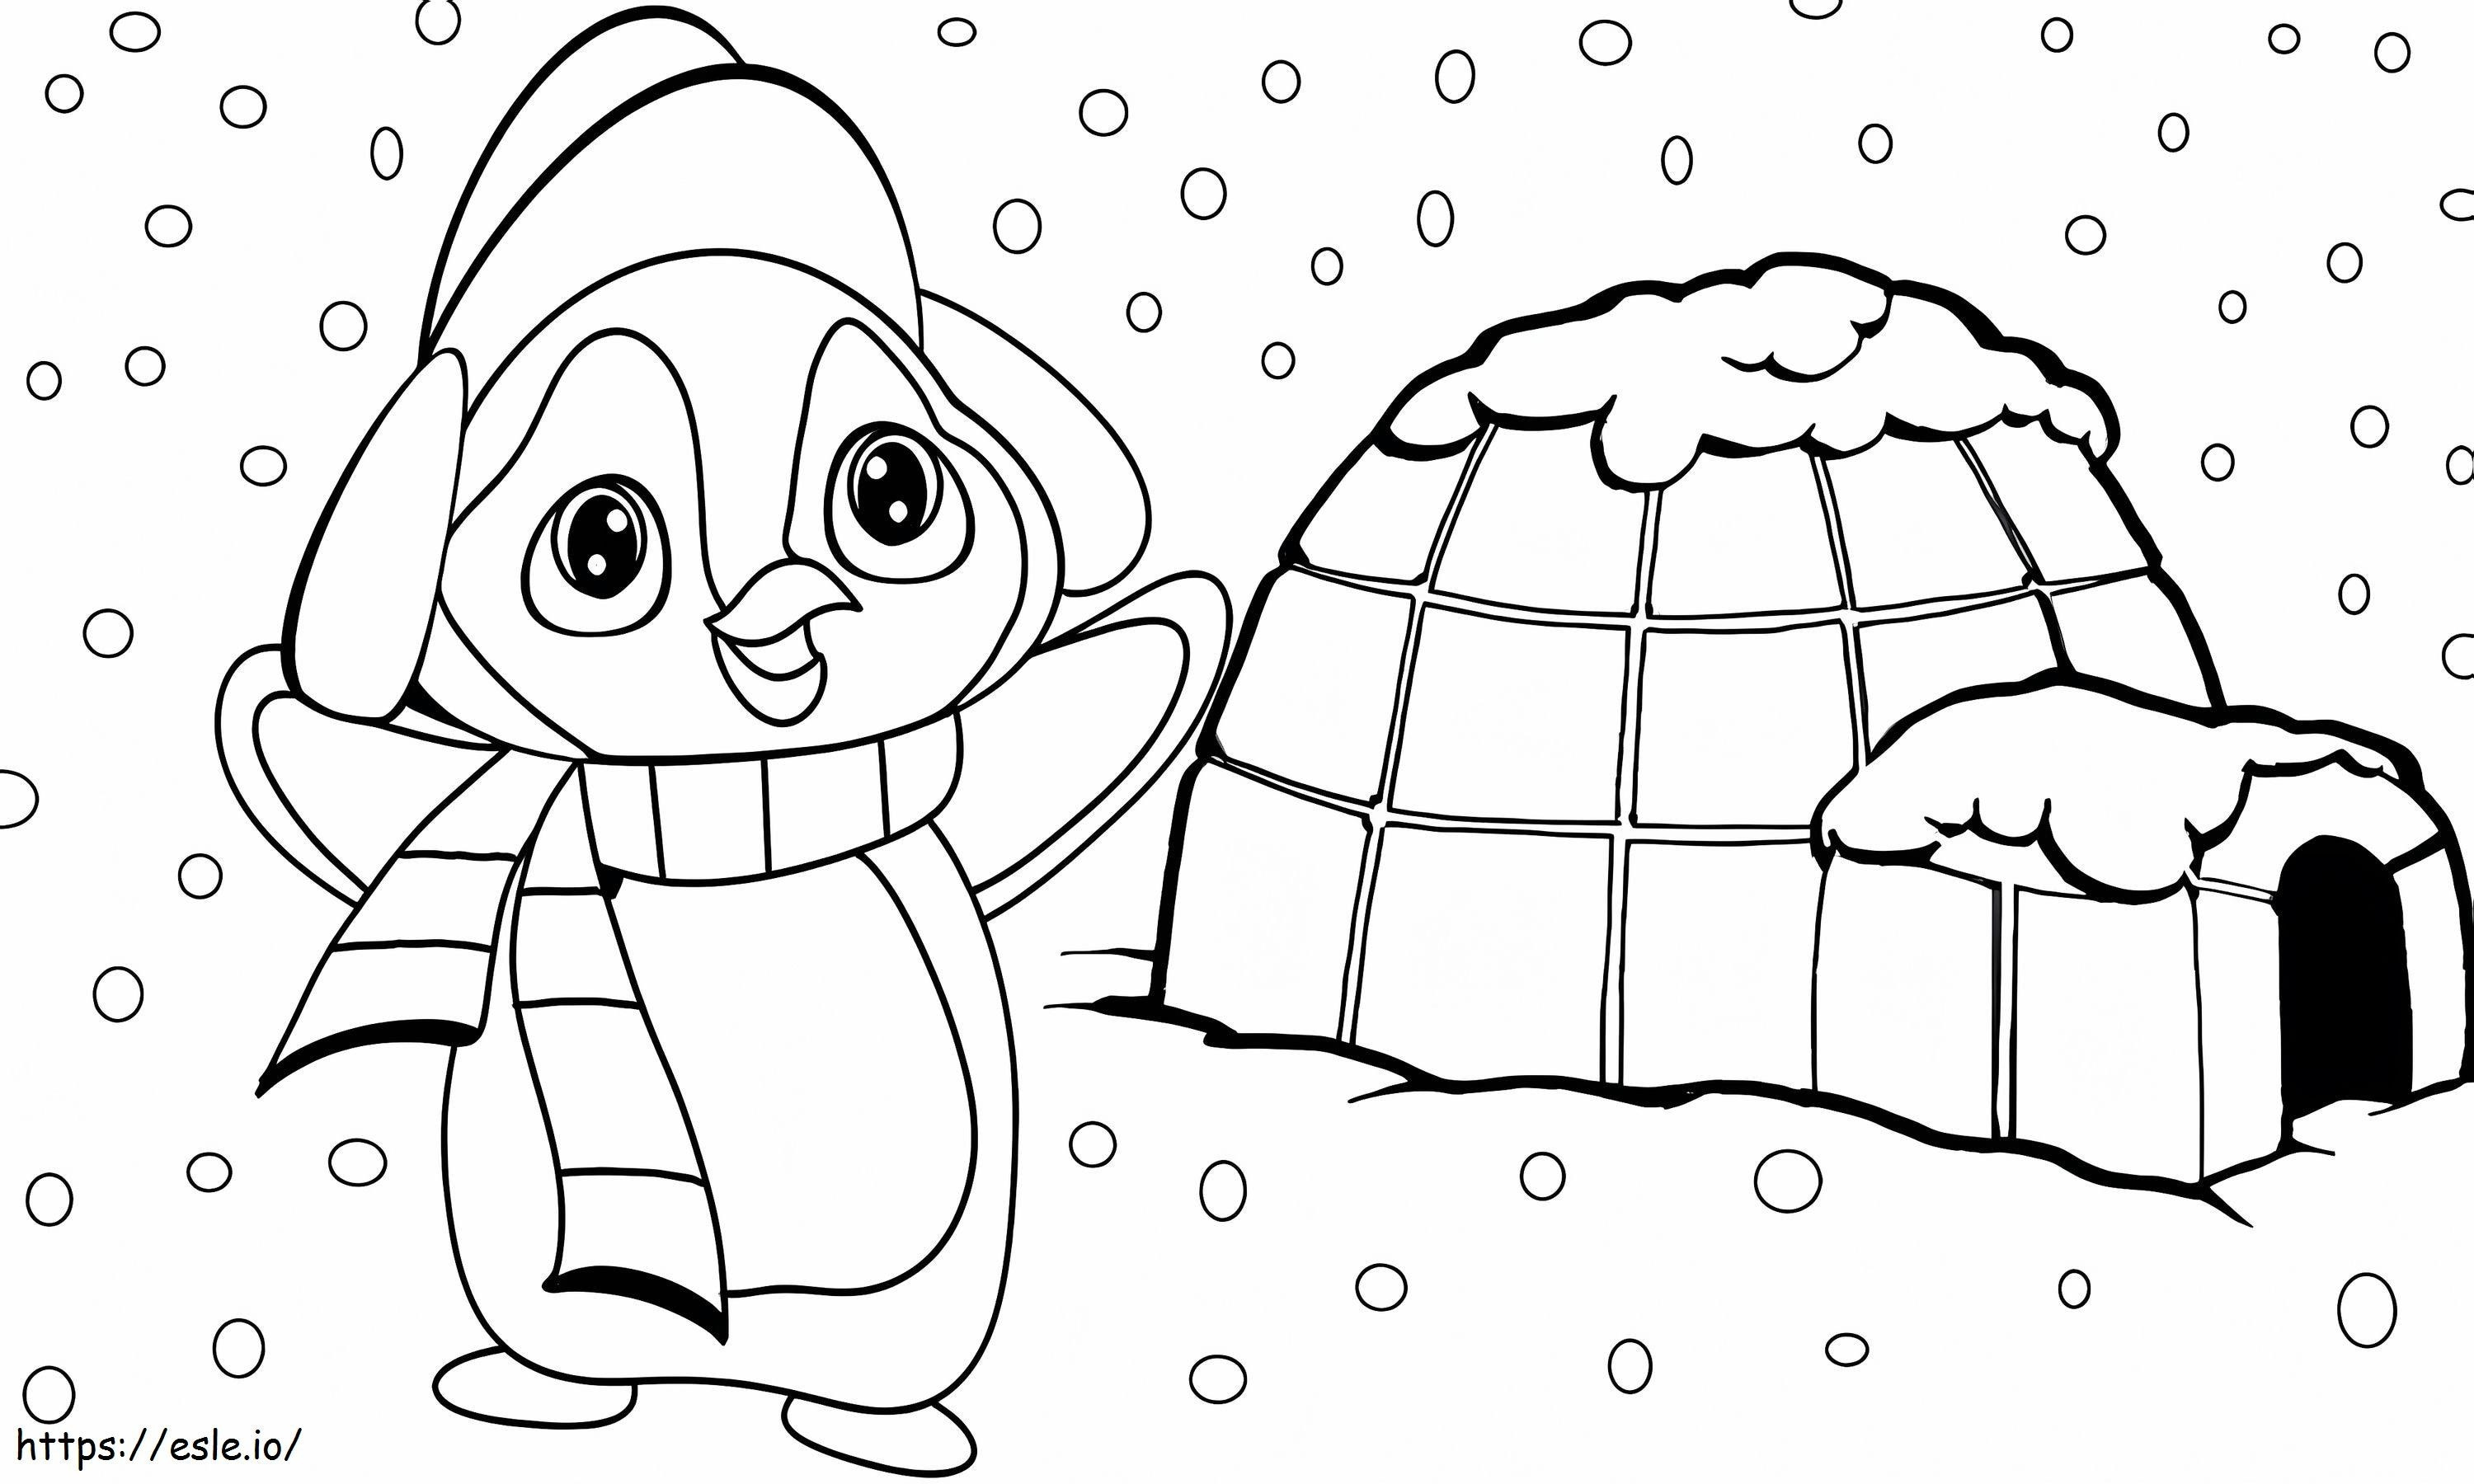 Pinguim e iglu de desenho animado para colorir